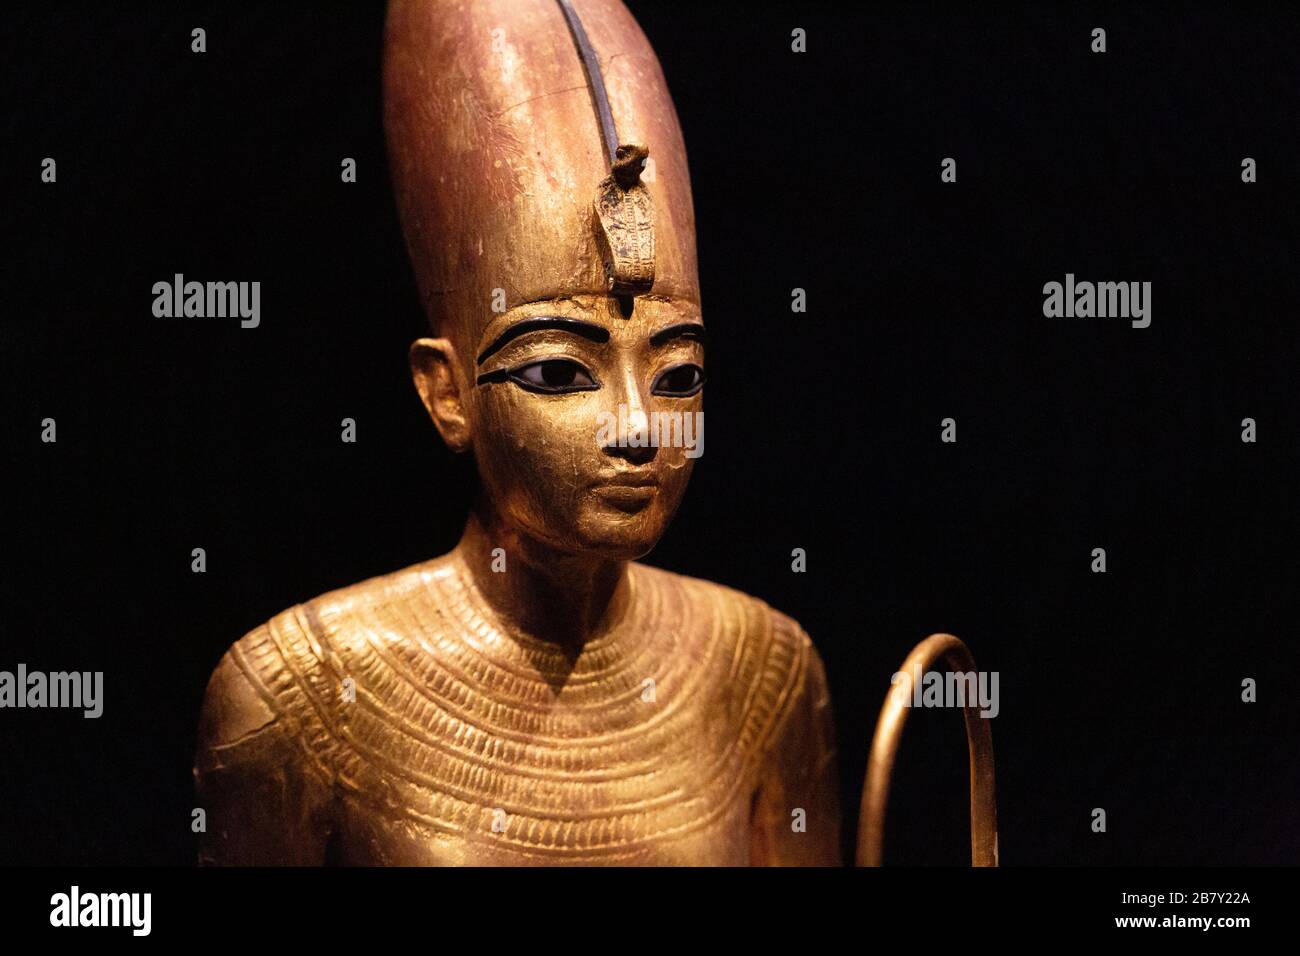 Statua di Tutankhamun - primo piano della testa, statua d'oro del Re nella Corona Bianca, tesori di Tutankhamun dalla tomba di Tutankhamuns, mostra di Tutankhamun nel Regno Unito Foto Stock